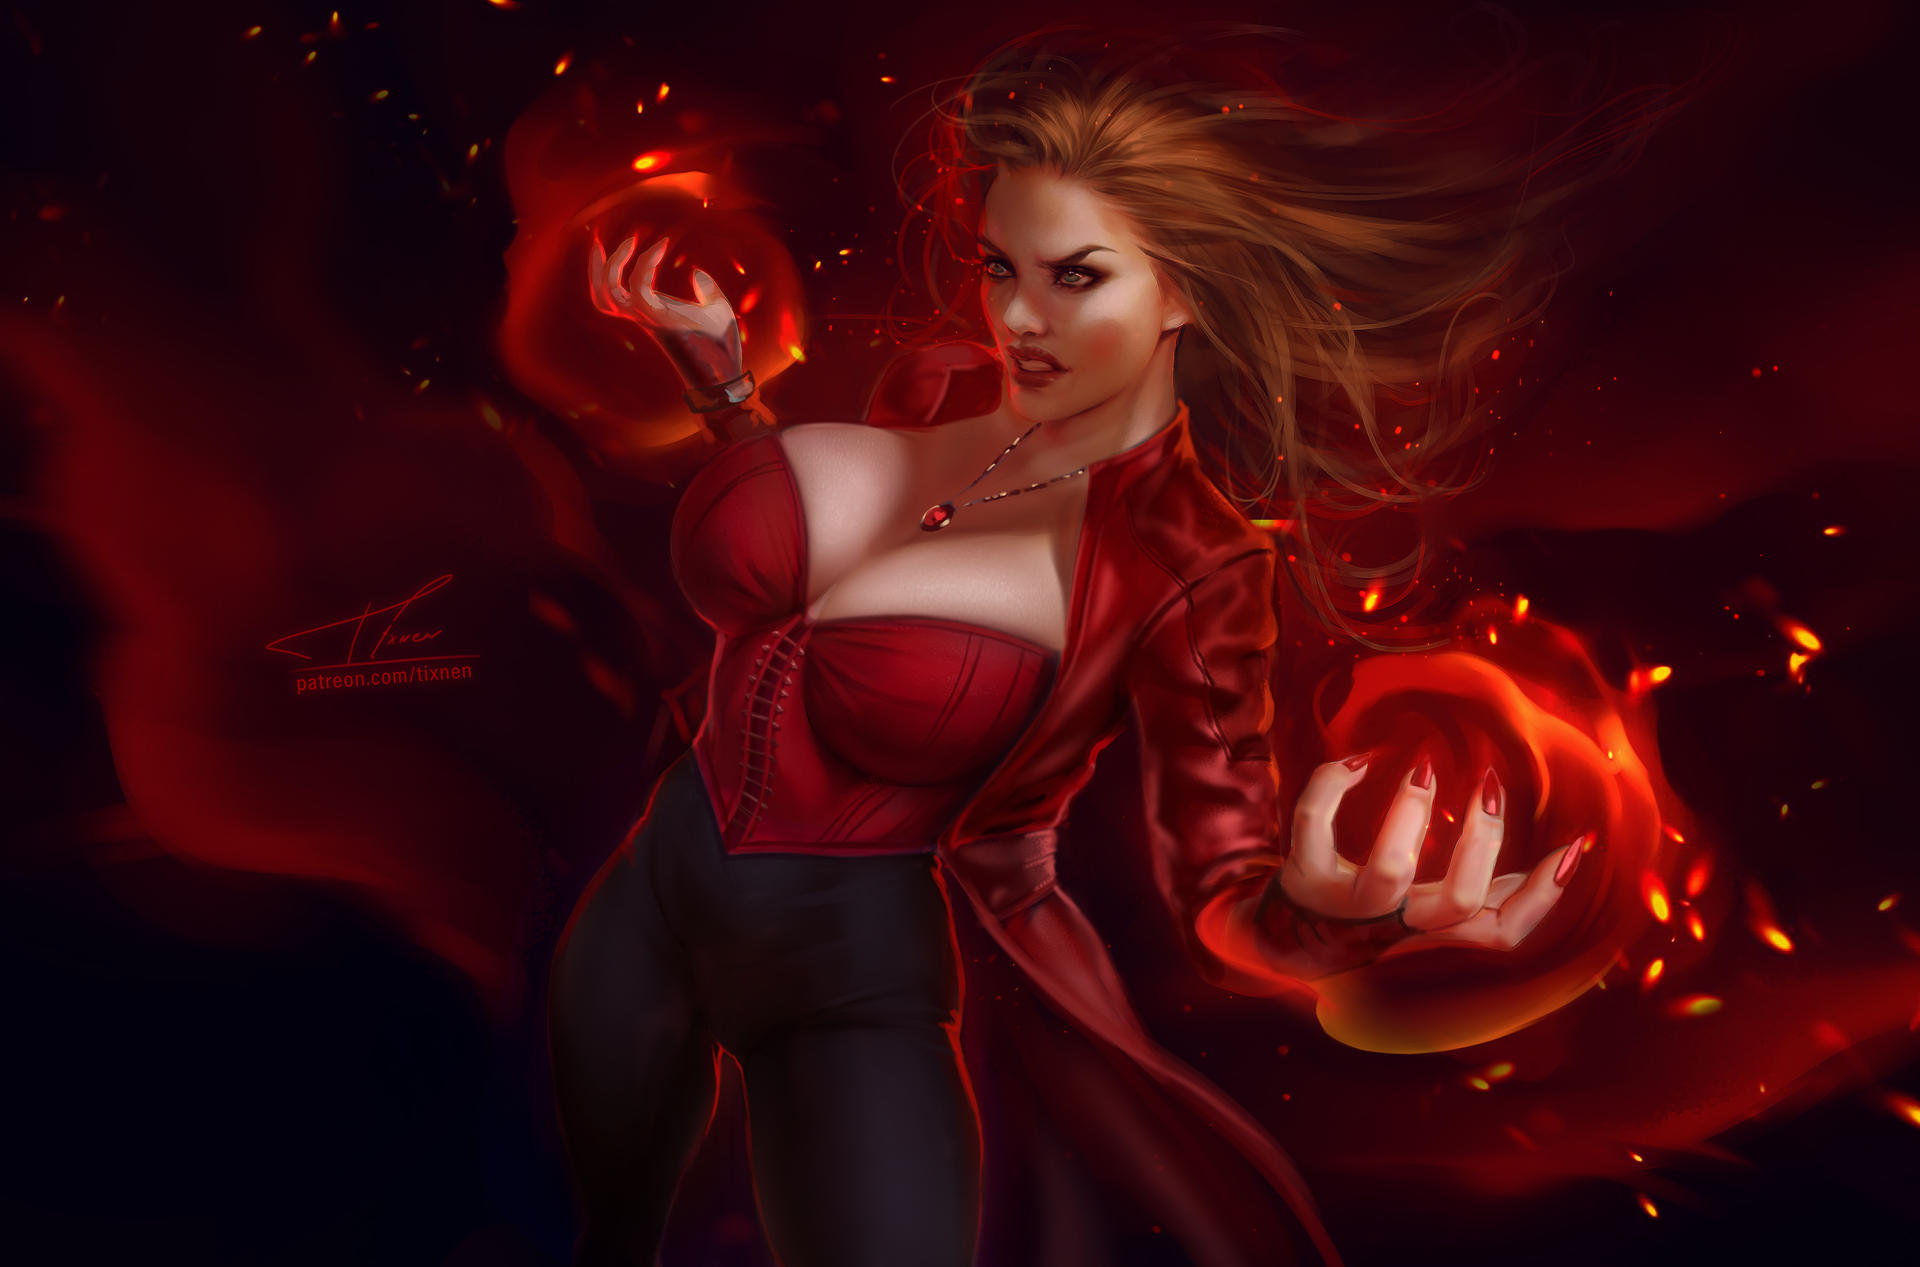 Scarlet Witch by Danejoart on DeviantArt